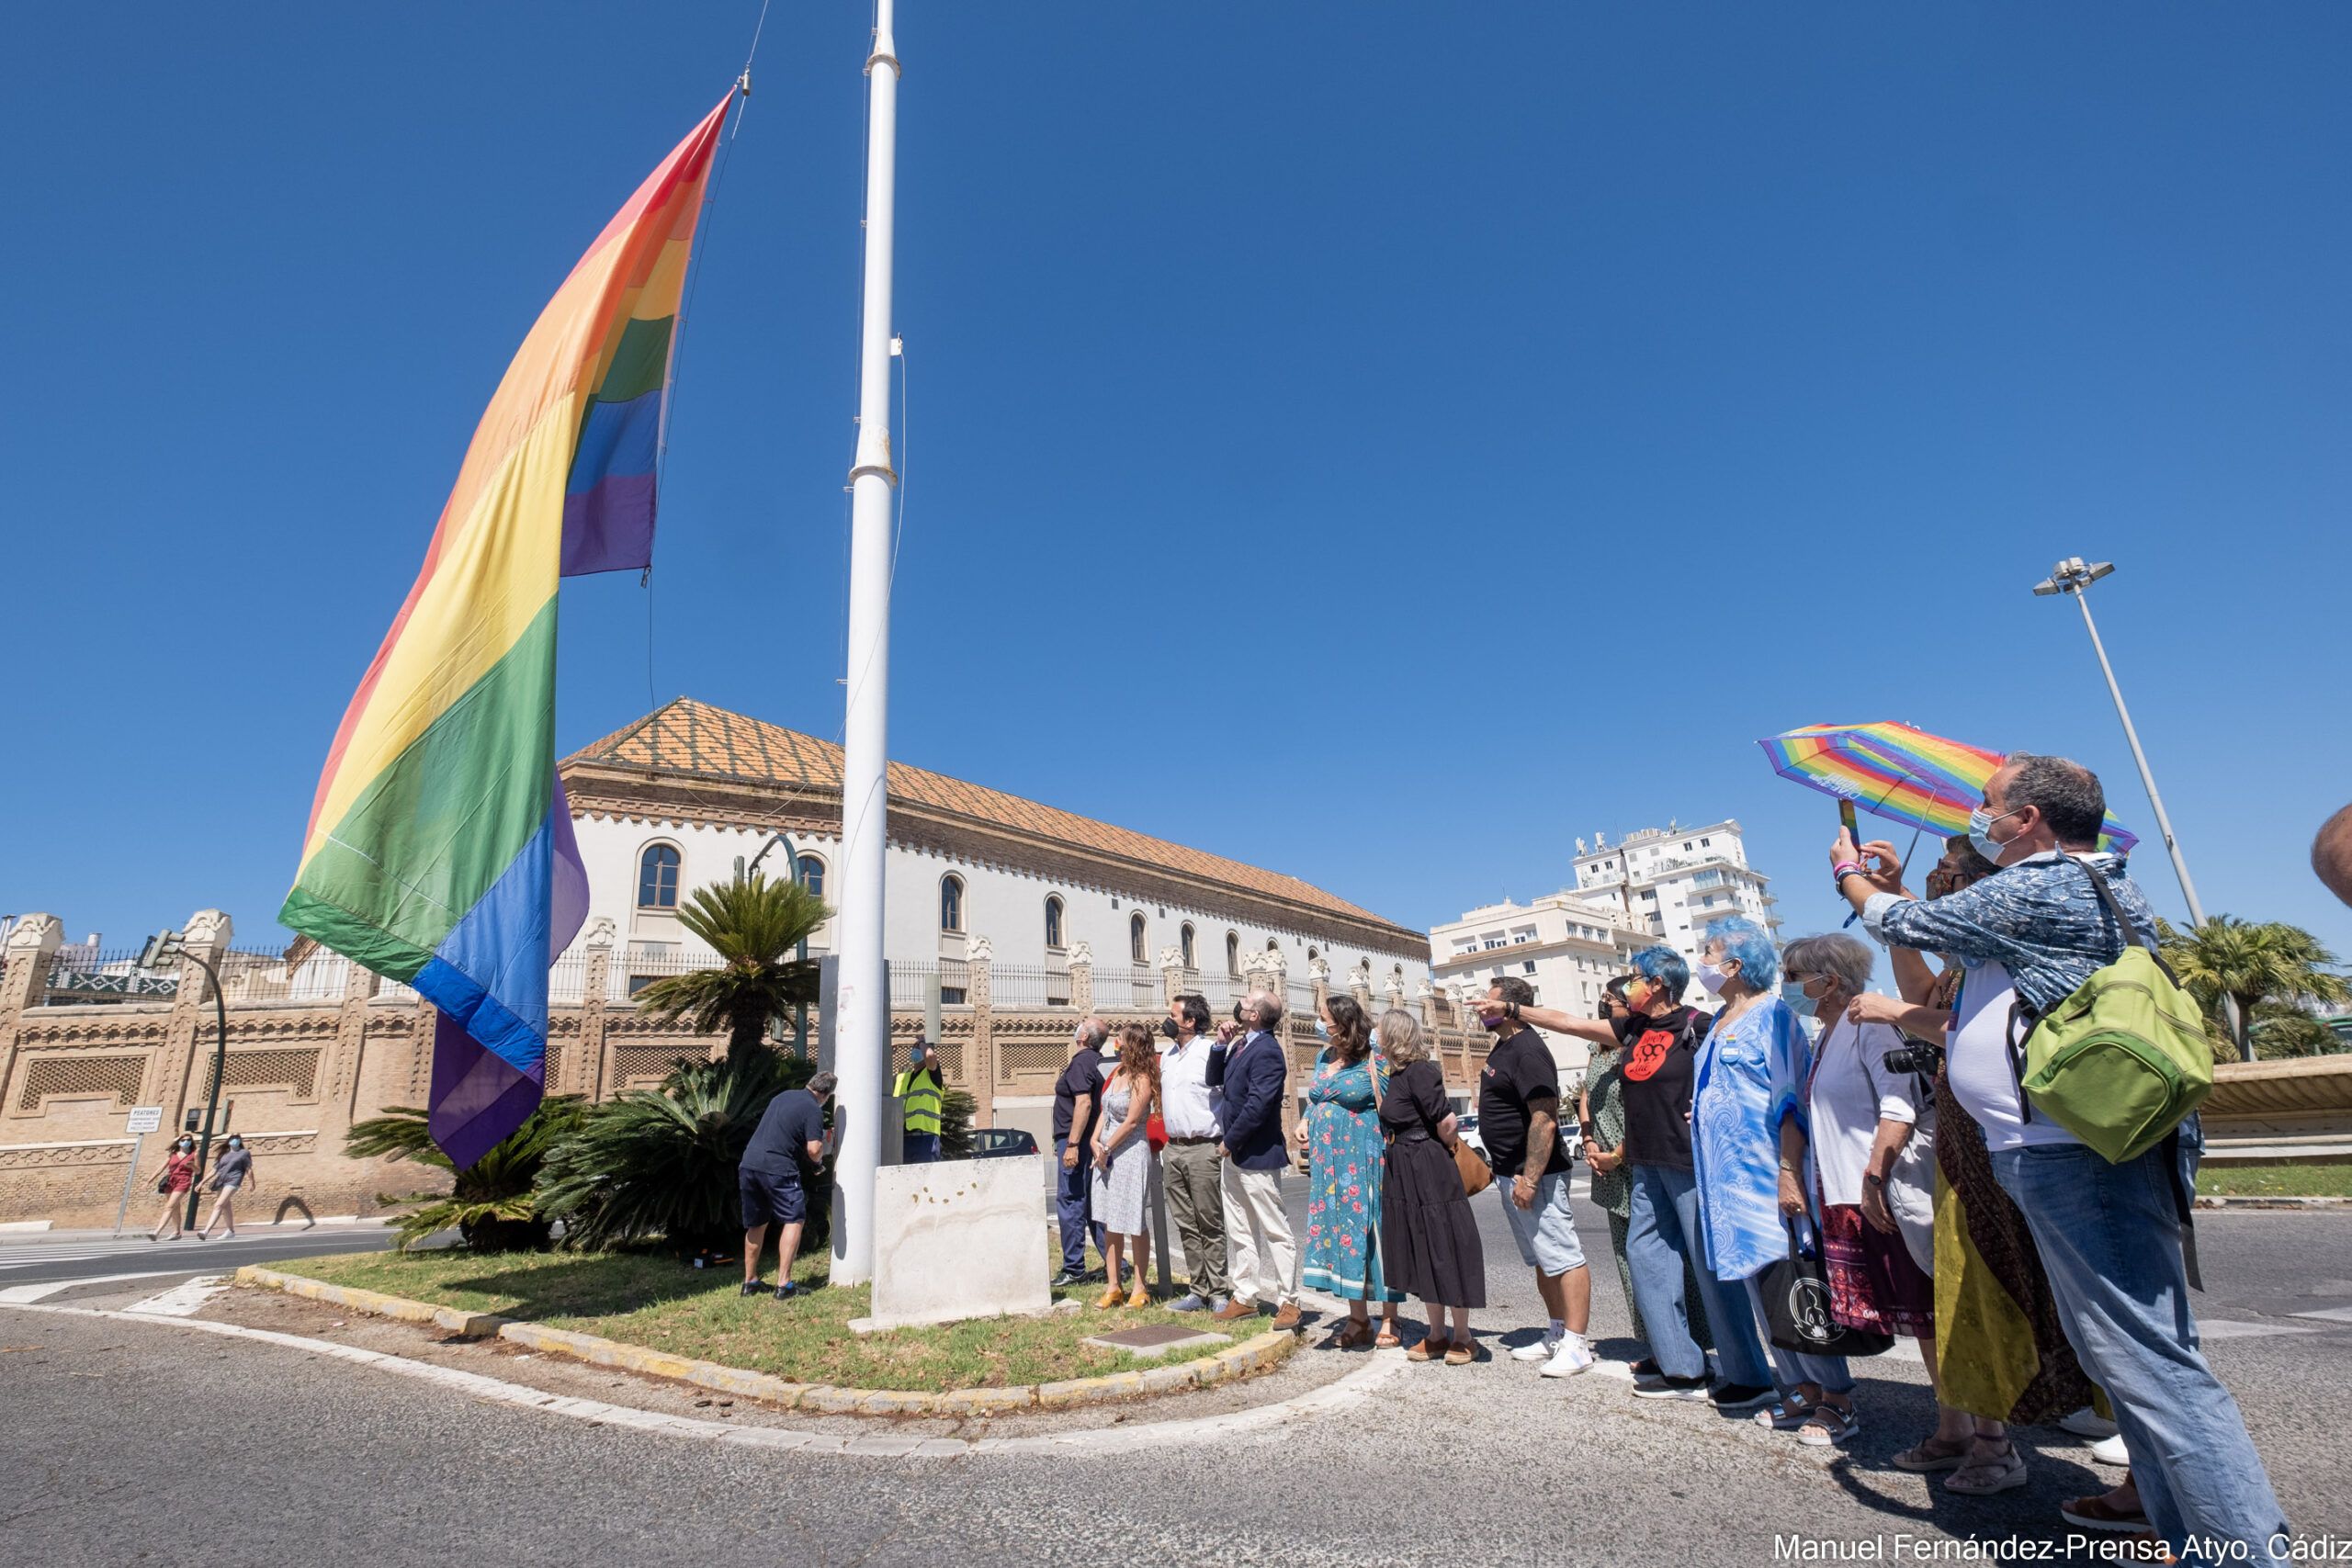 Abogados Cristianos vuelve a denunciar al Ayuntamiento de Cádiz por izar la bandera del Orgullo LGTBIQ+.